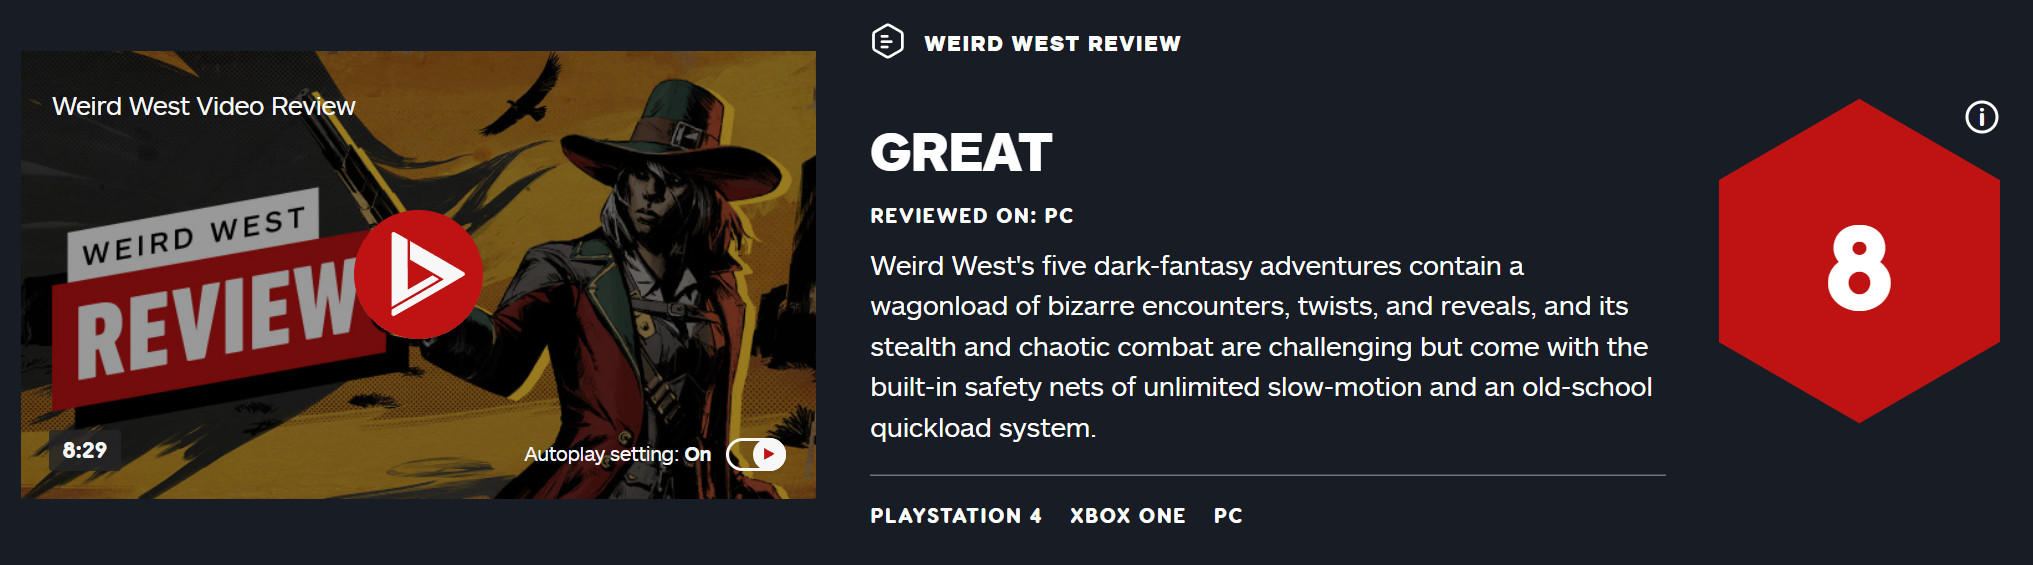 《诡同西部》尾批媒体评分化禁 IGN给出8分好评